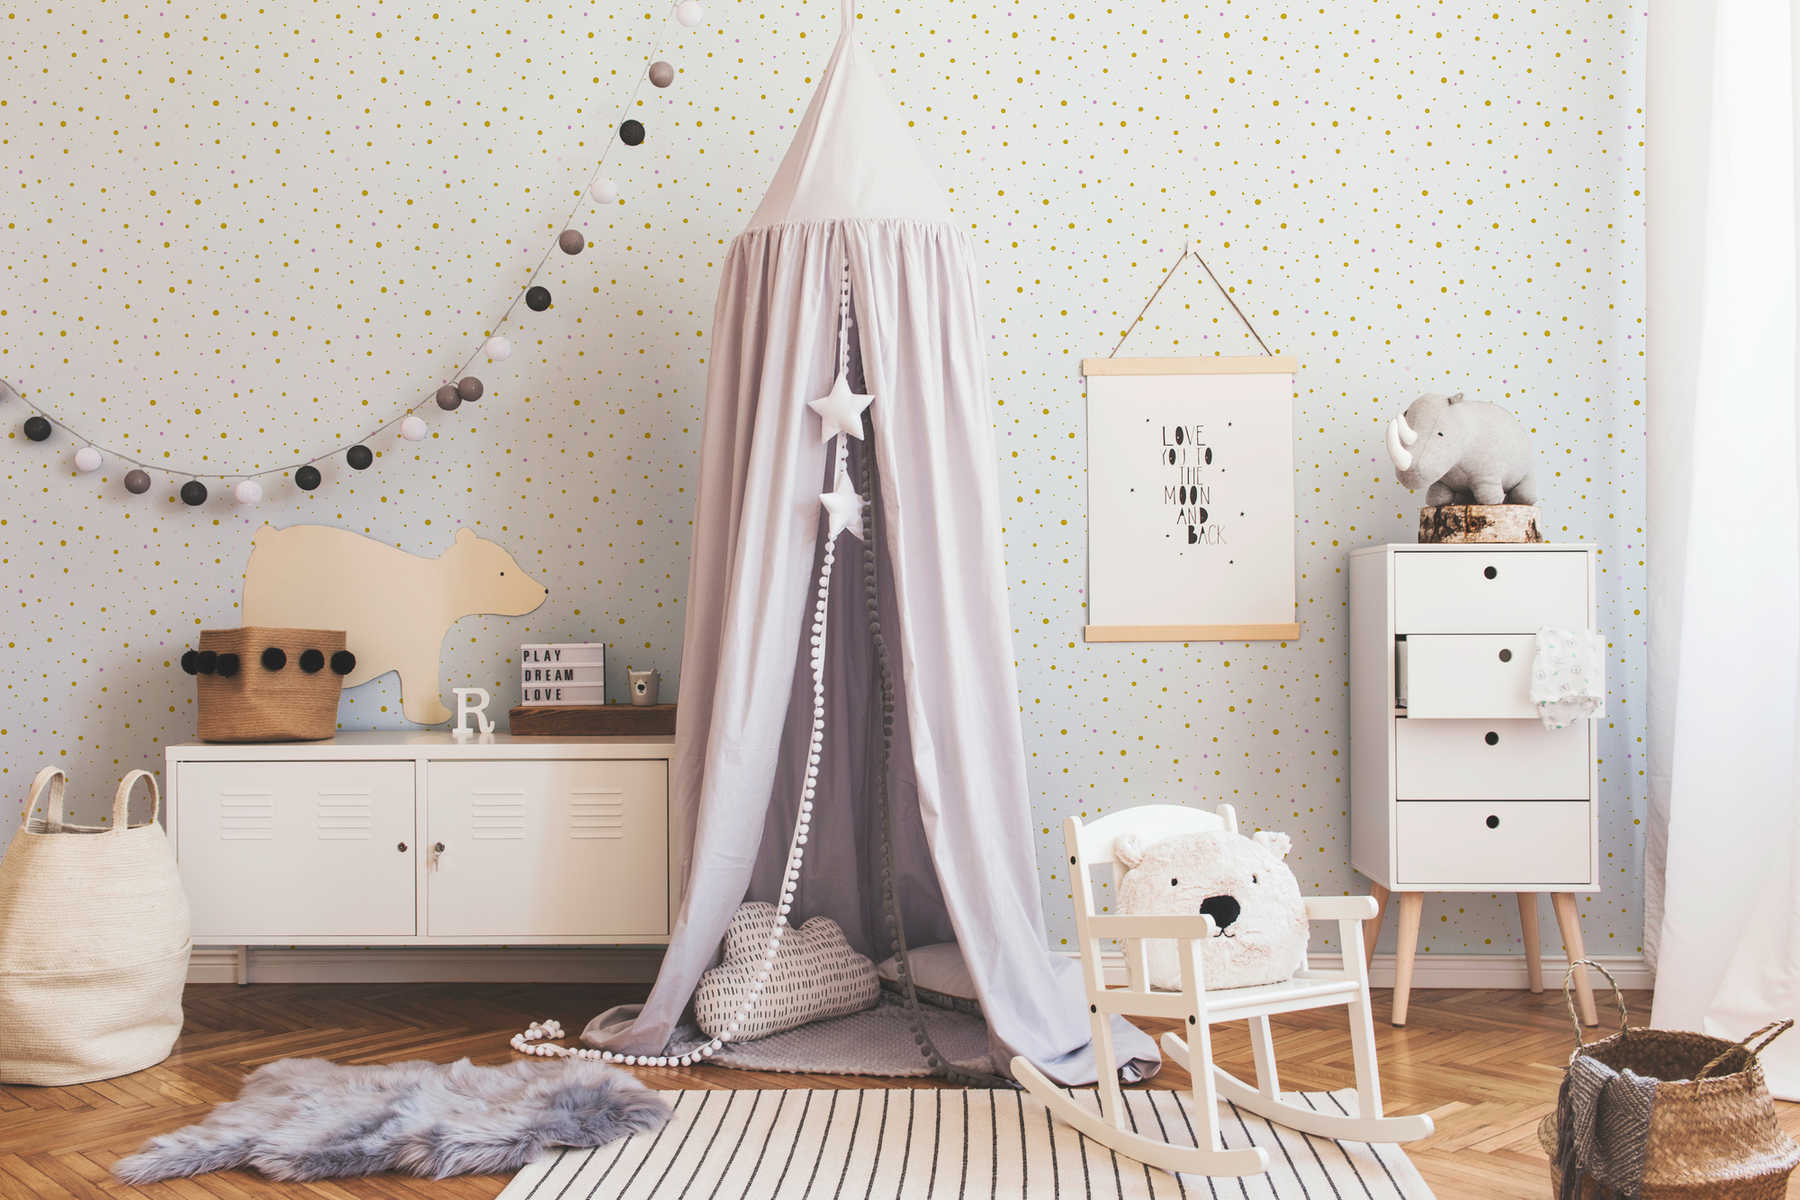             Papel pintado de puntos y efecto metálico para habitación infantil - blanco
        